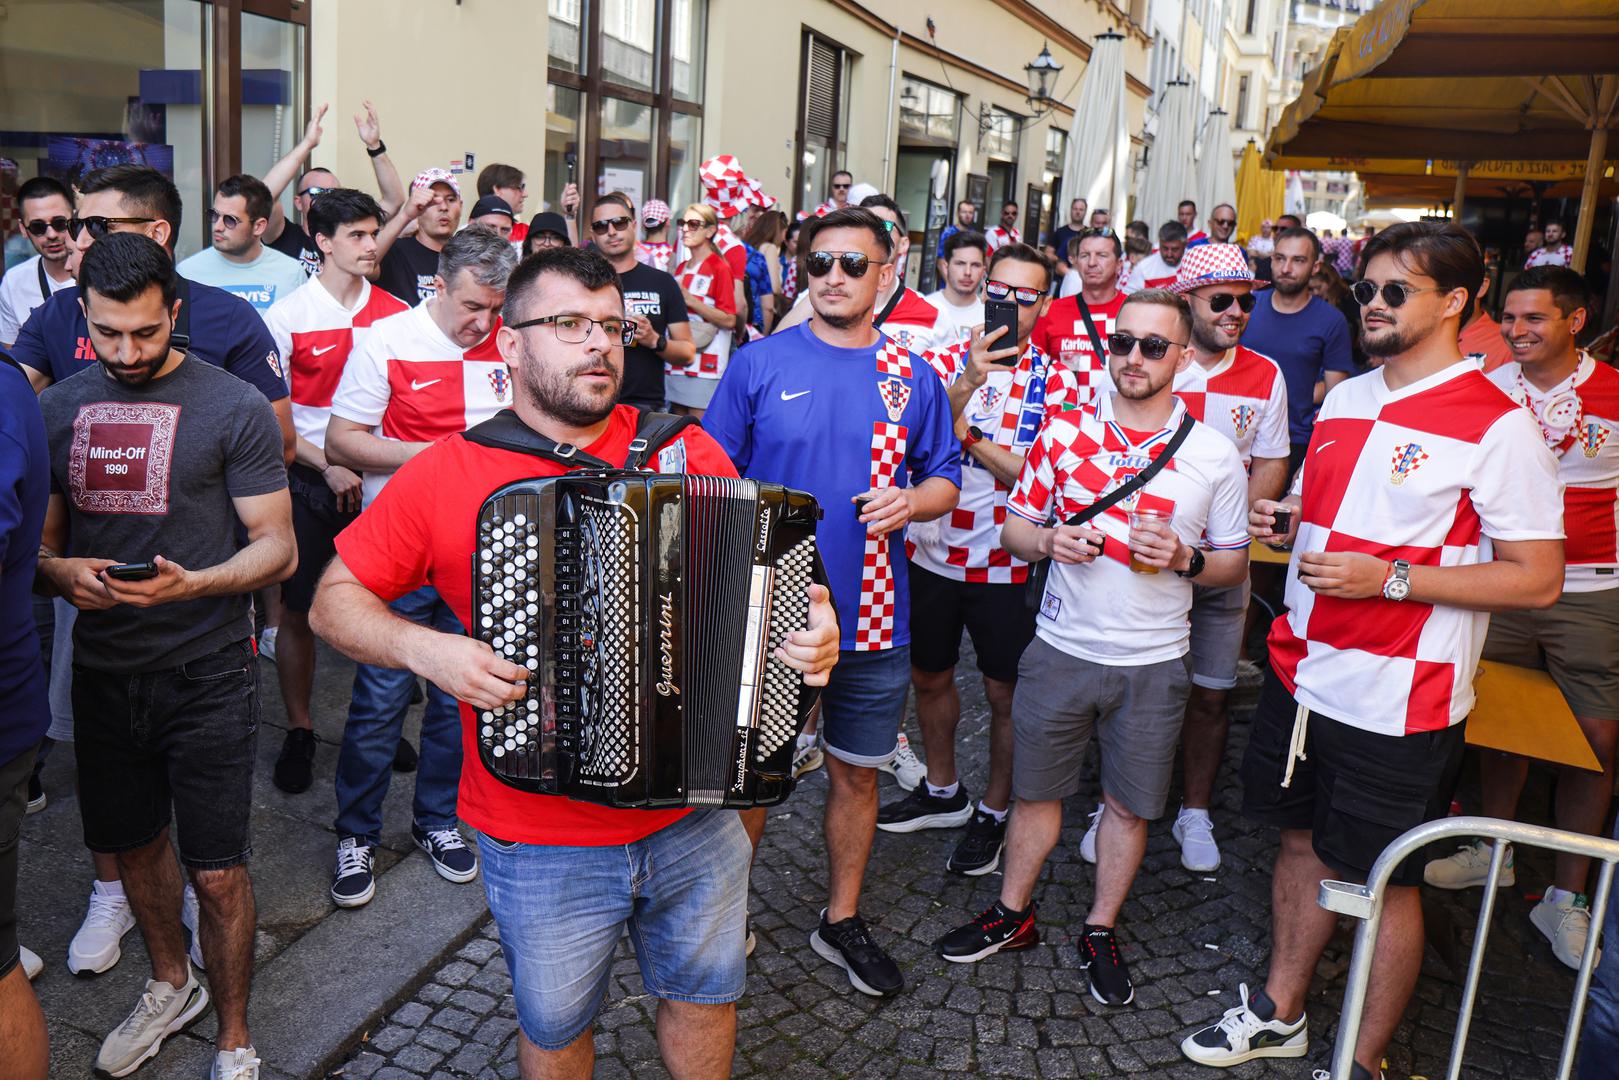 Veliku podršku imat će i u Leipzigu, gdje se igra utakmica protiv Italije. U gradu u istočnoj Njemačkoj već se skupilo više stotina Hrvata, koji su odgovorni za genijalnu atmosferu na ulicama.